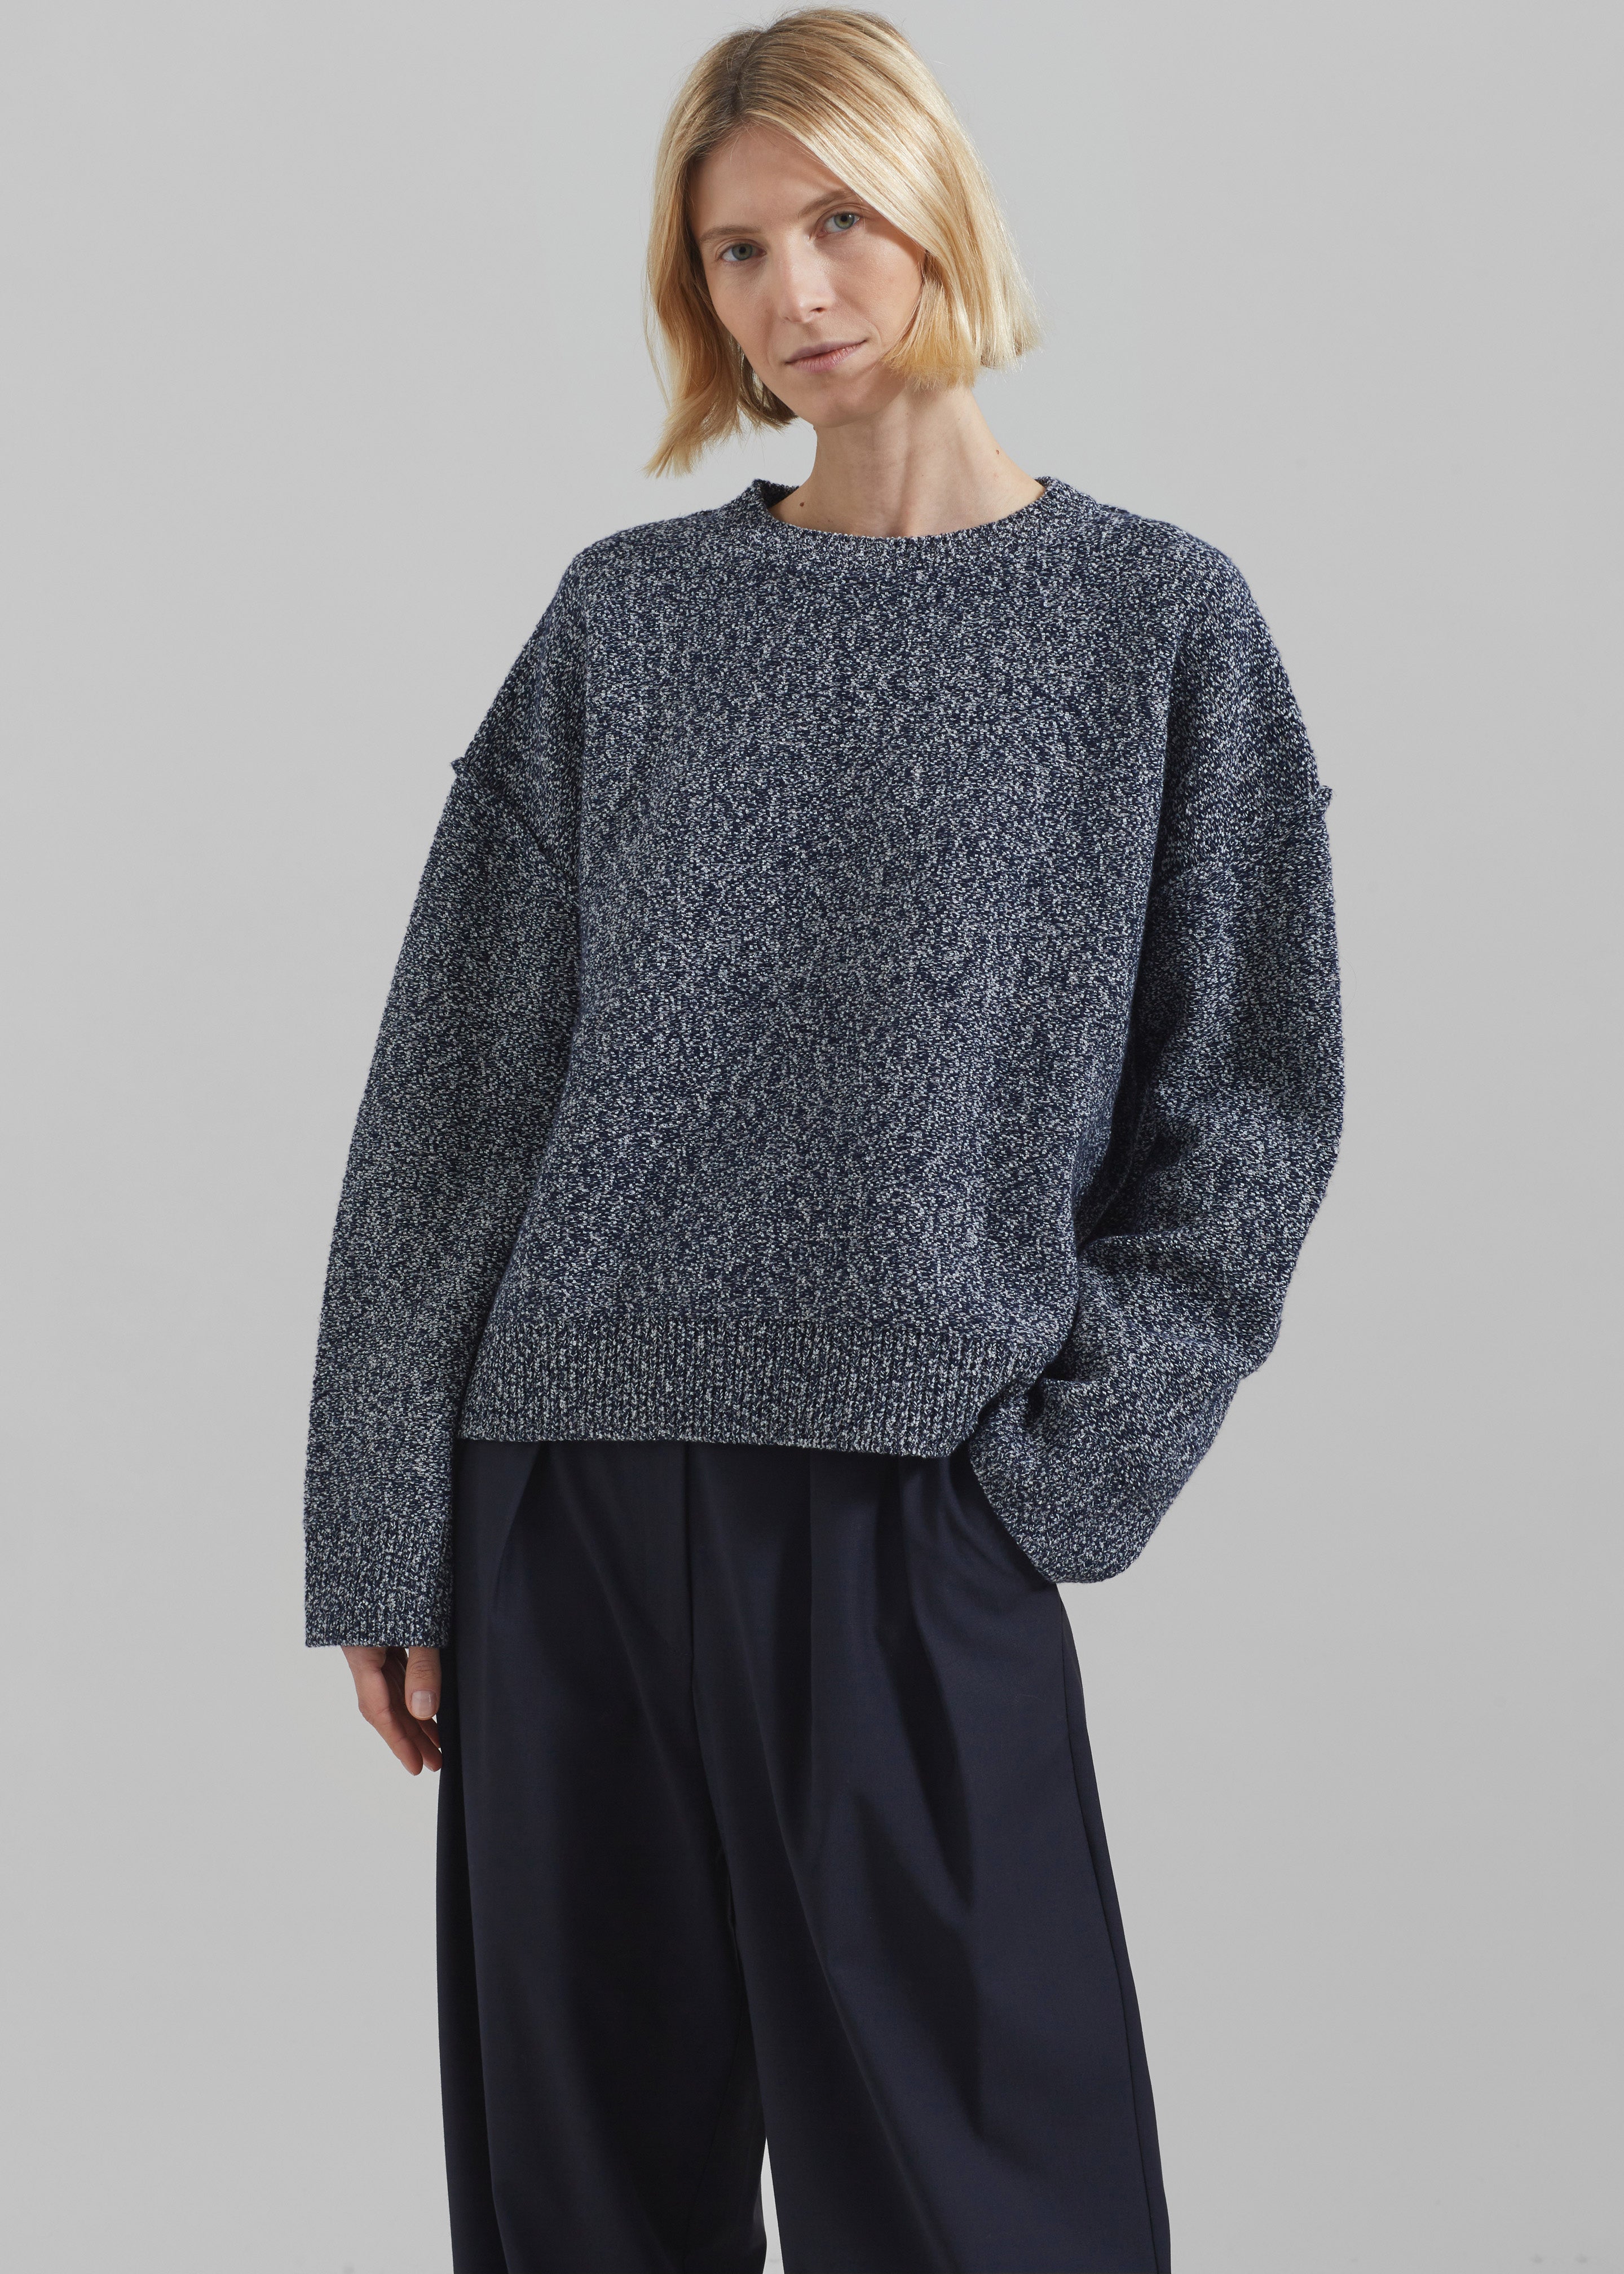 Women's Sweaters – Frankie Shop Europe